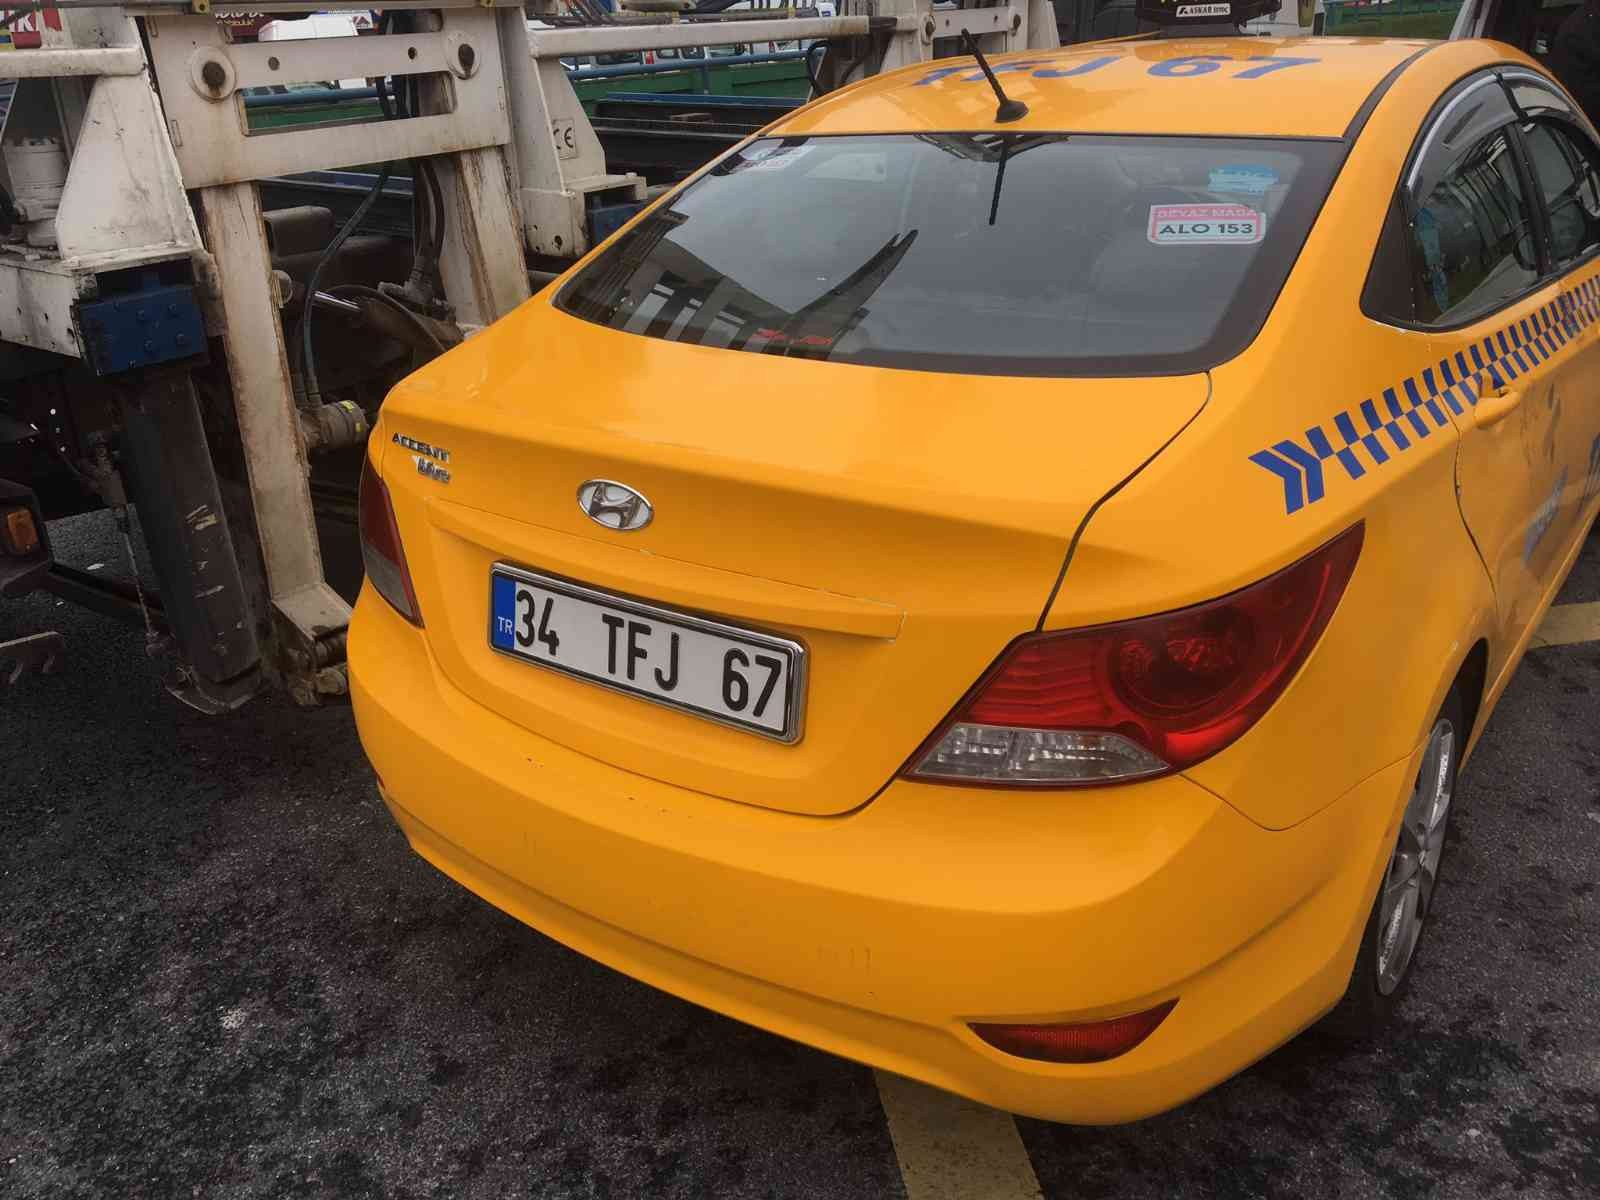 Kadın yolcuyu araçtan atan taksici yakalandı #istanbul